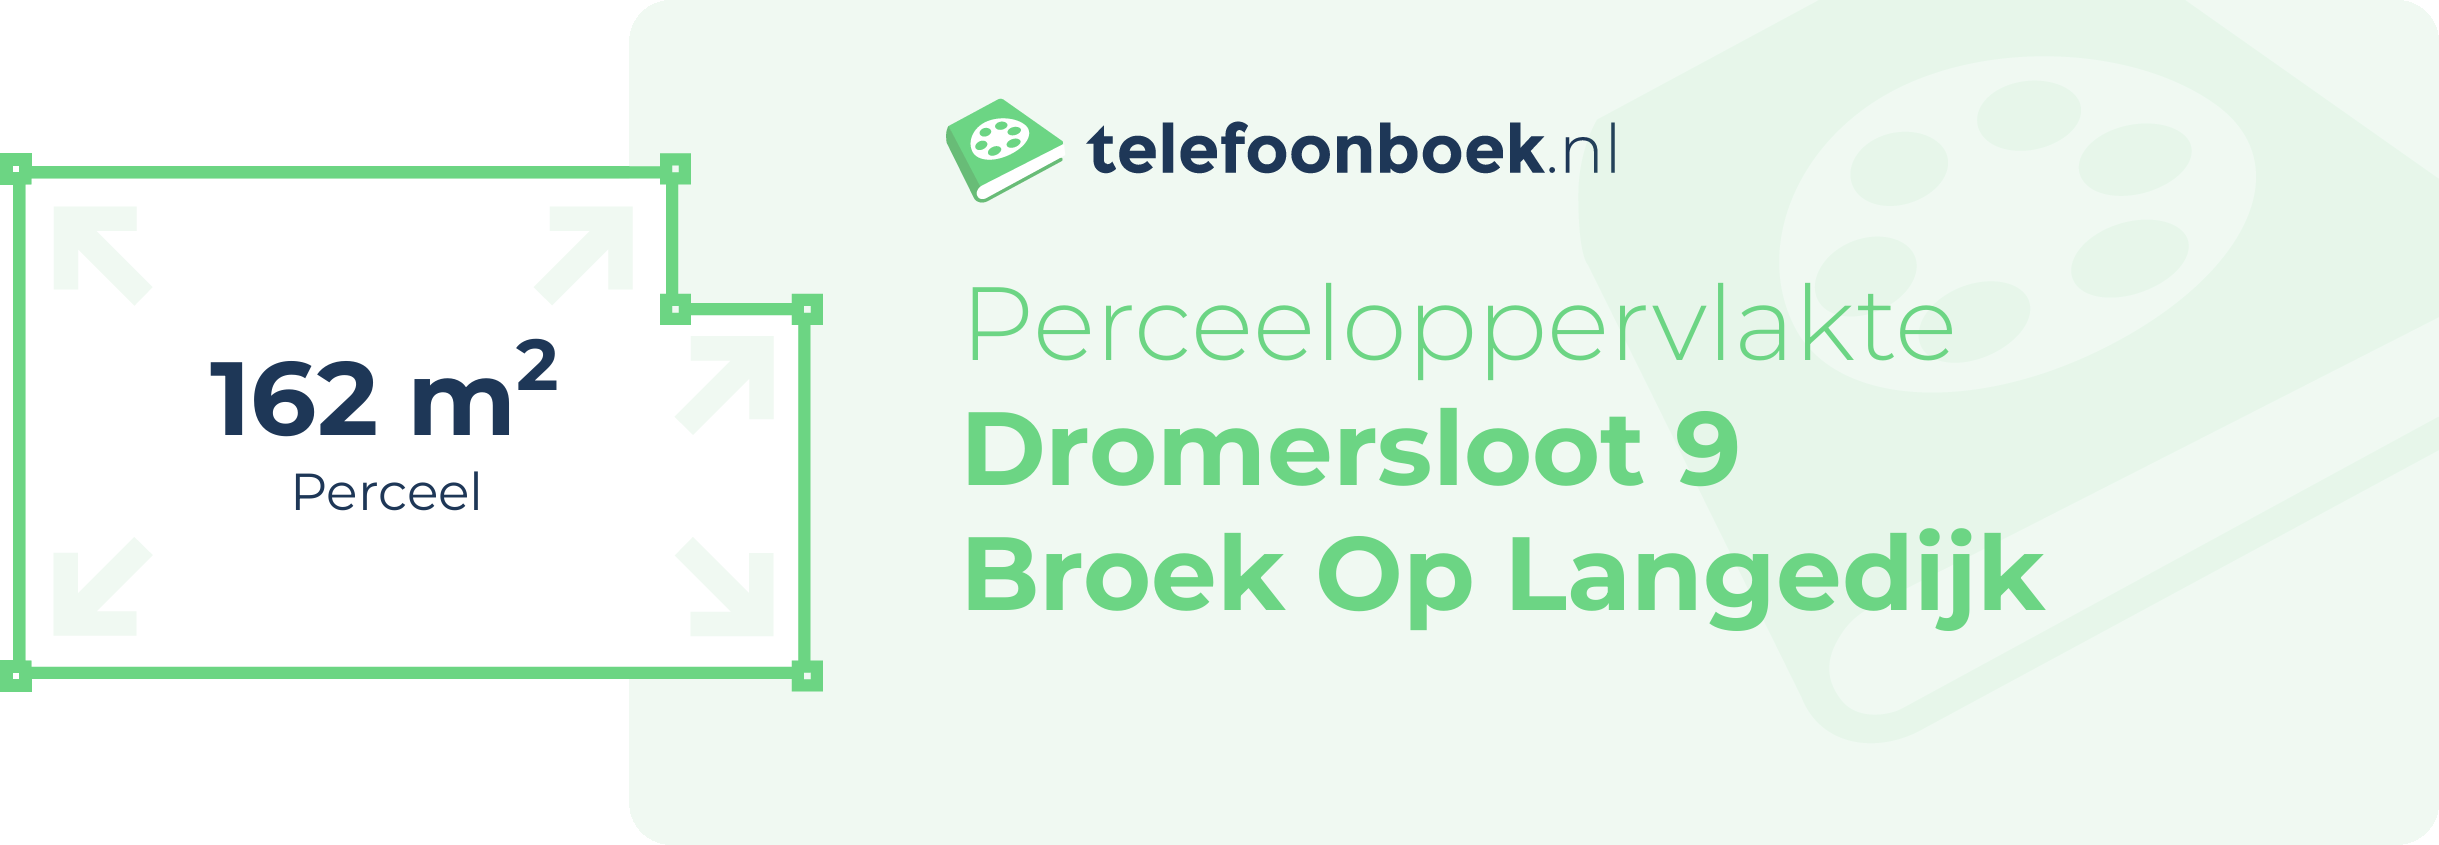 Perceeloppervlakte Dromersloot 9 Broek Op Langedijk